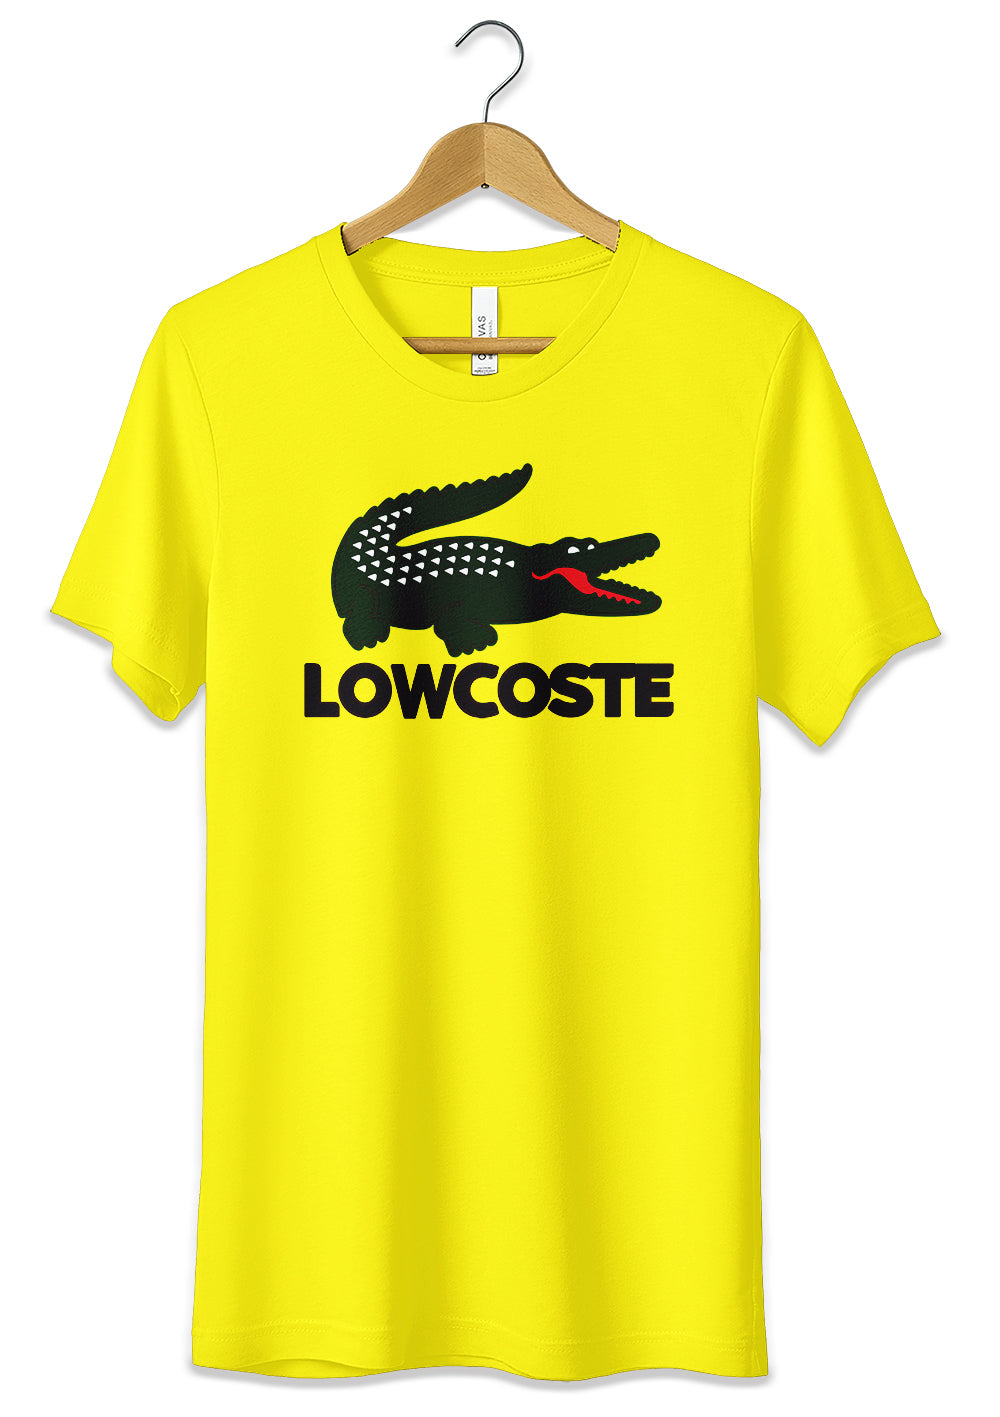 T-Shirt Funny Lowcost Maglietta 100% Cotone Idea Regalo, CmrDesignStore, T-Shirt, t-shirt-funny-lowcost-maglietta-100-cotone-idea-regalo, CmrDesignStore